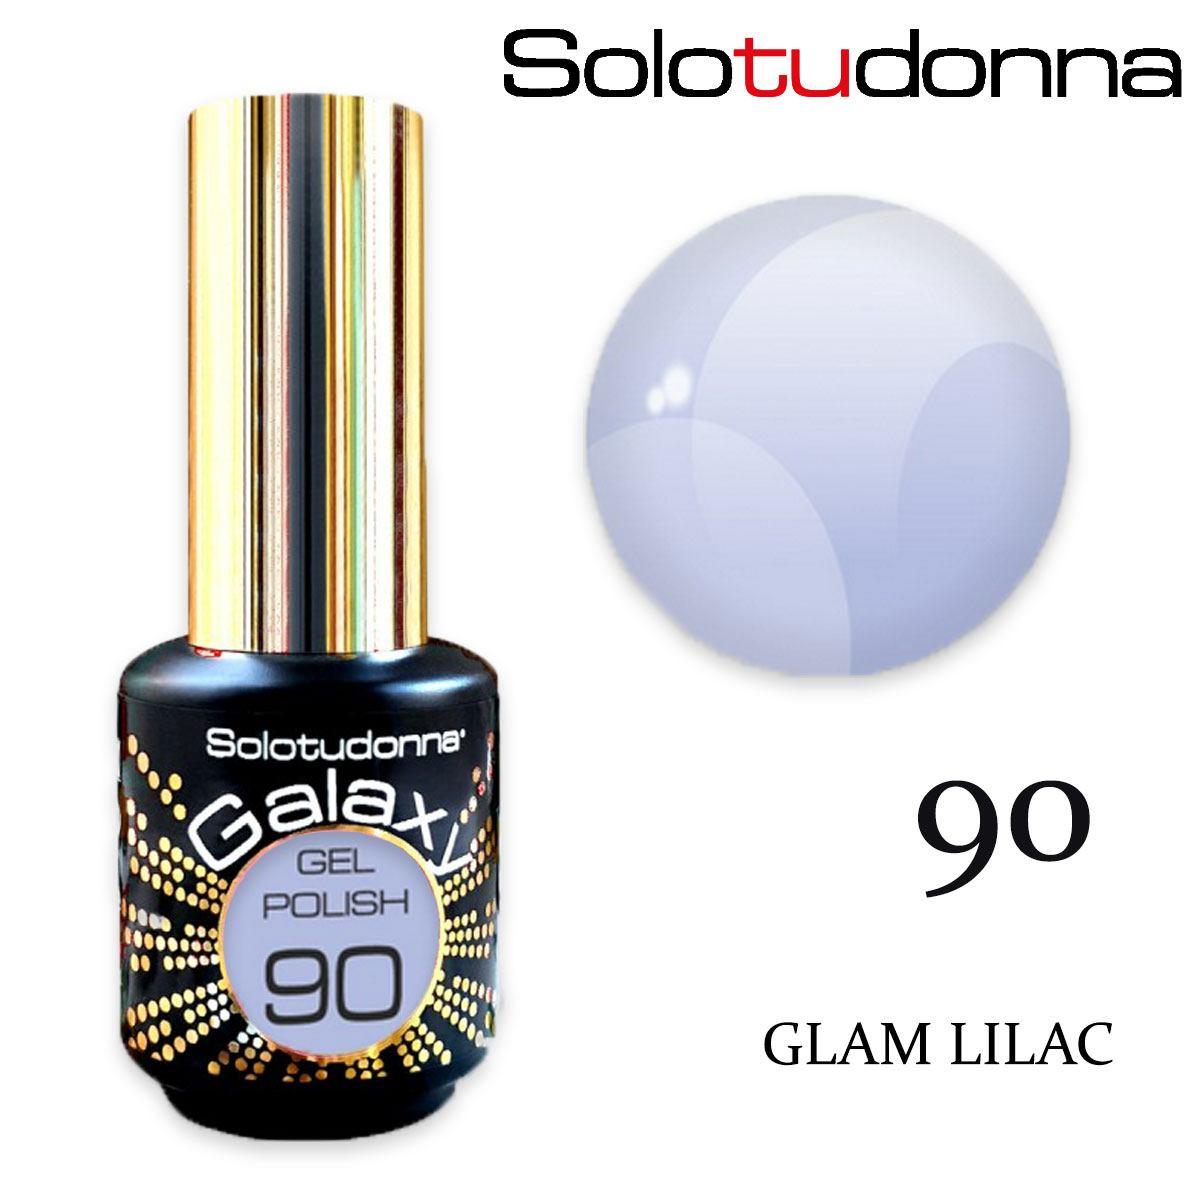 Solo tu donna gel polish galaxy 6ml glam lilac n. 90